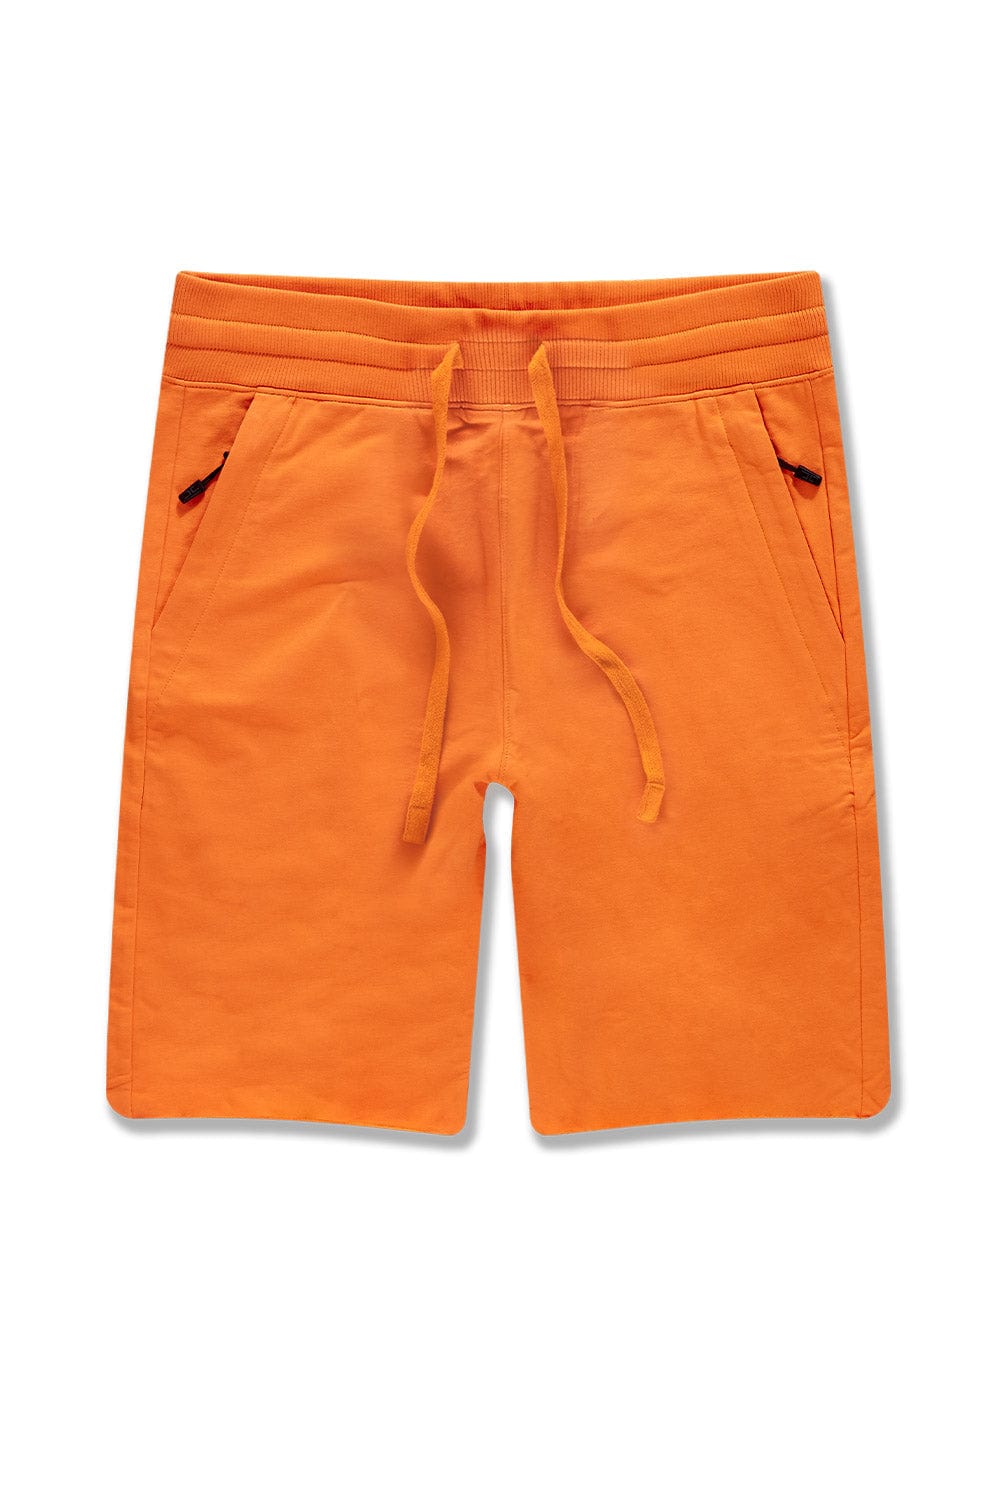 Jordan Craig OG - Palma French Terry Shorts Orange / S